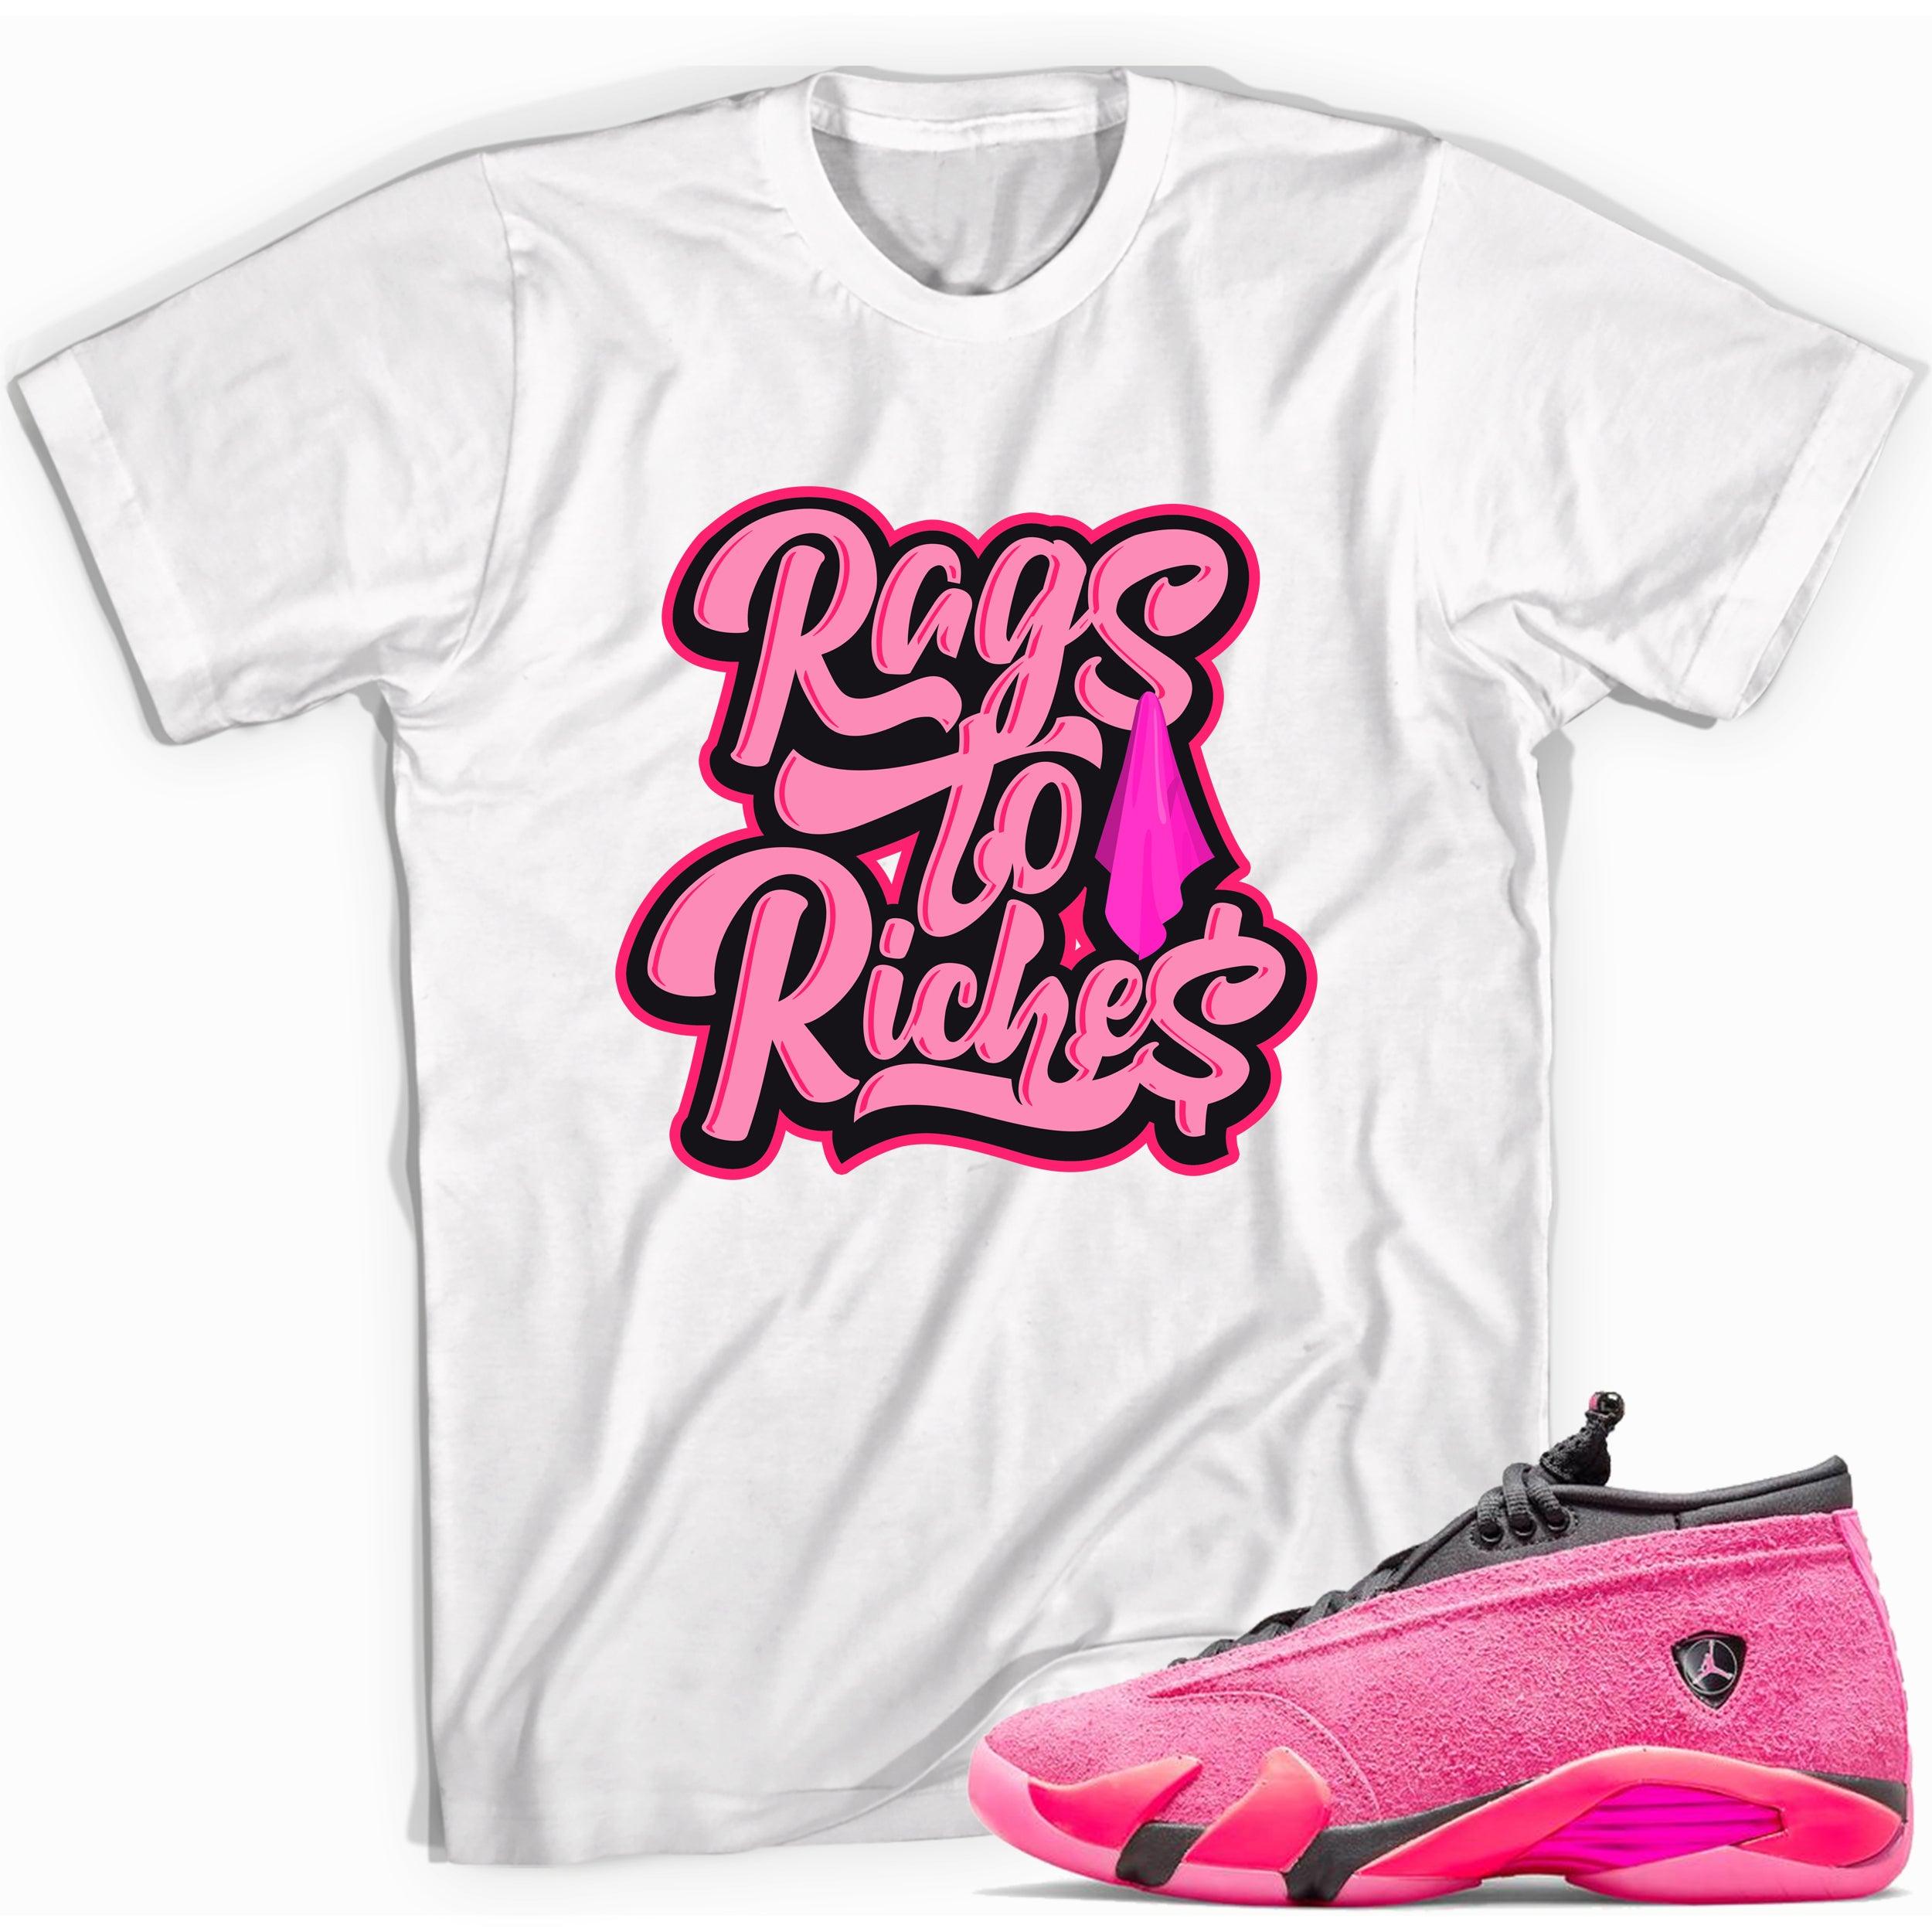 Rags to Riches Shirt Jordan 14s Low Shocking Pink photo